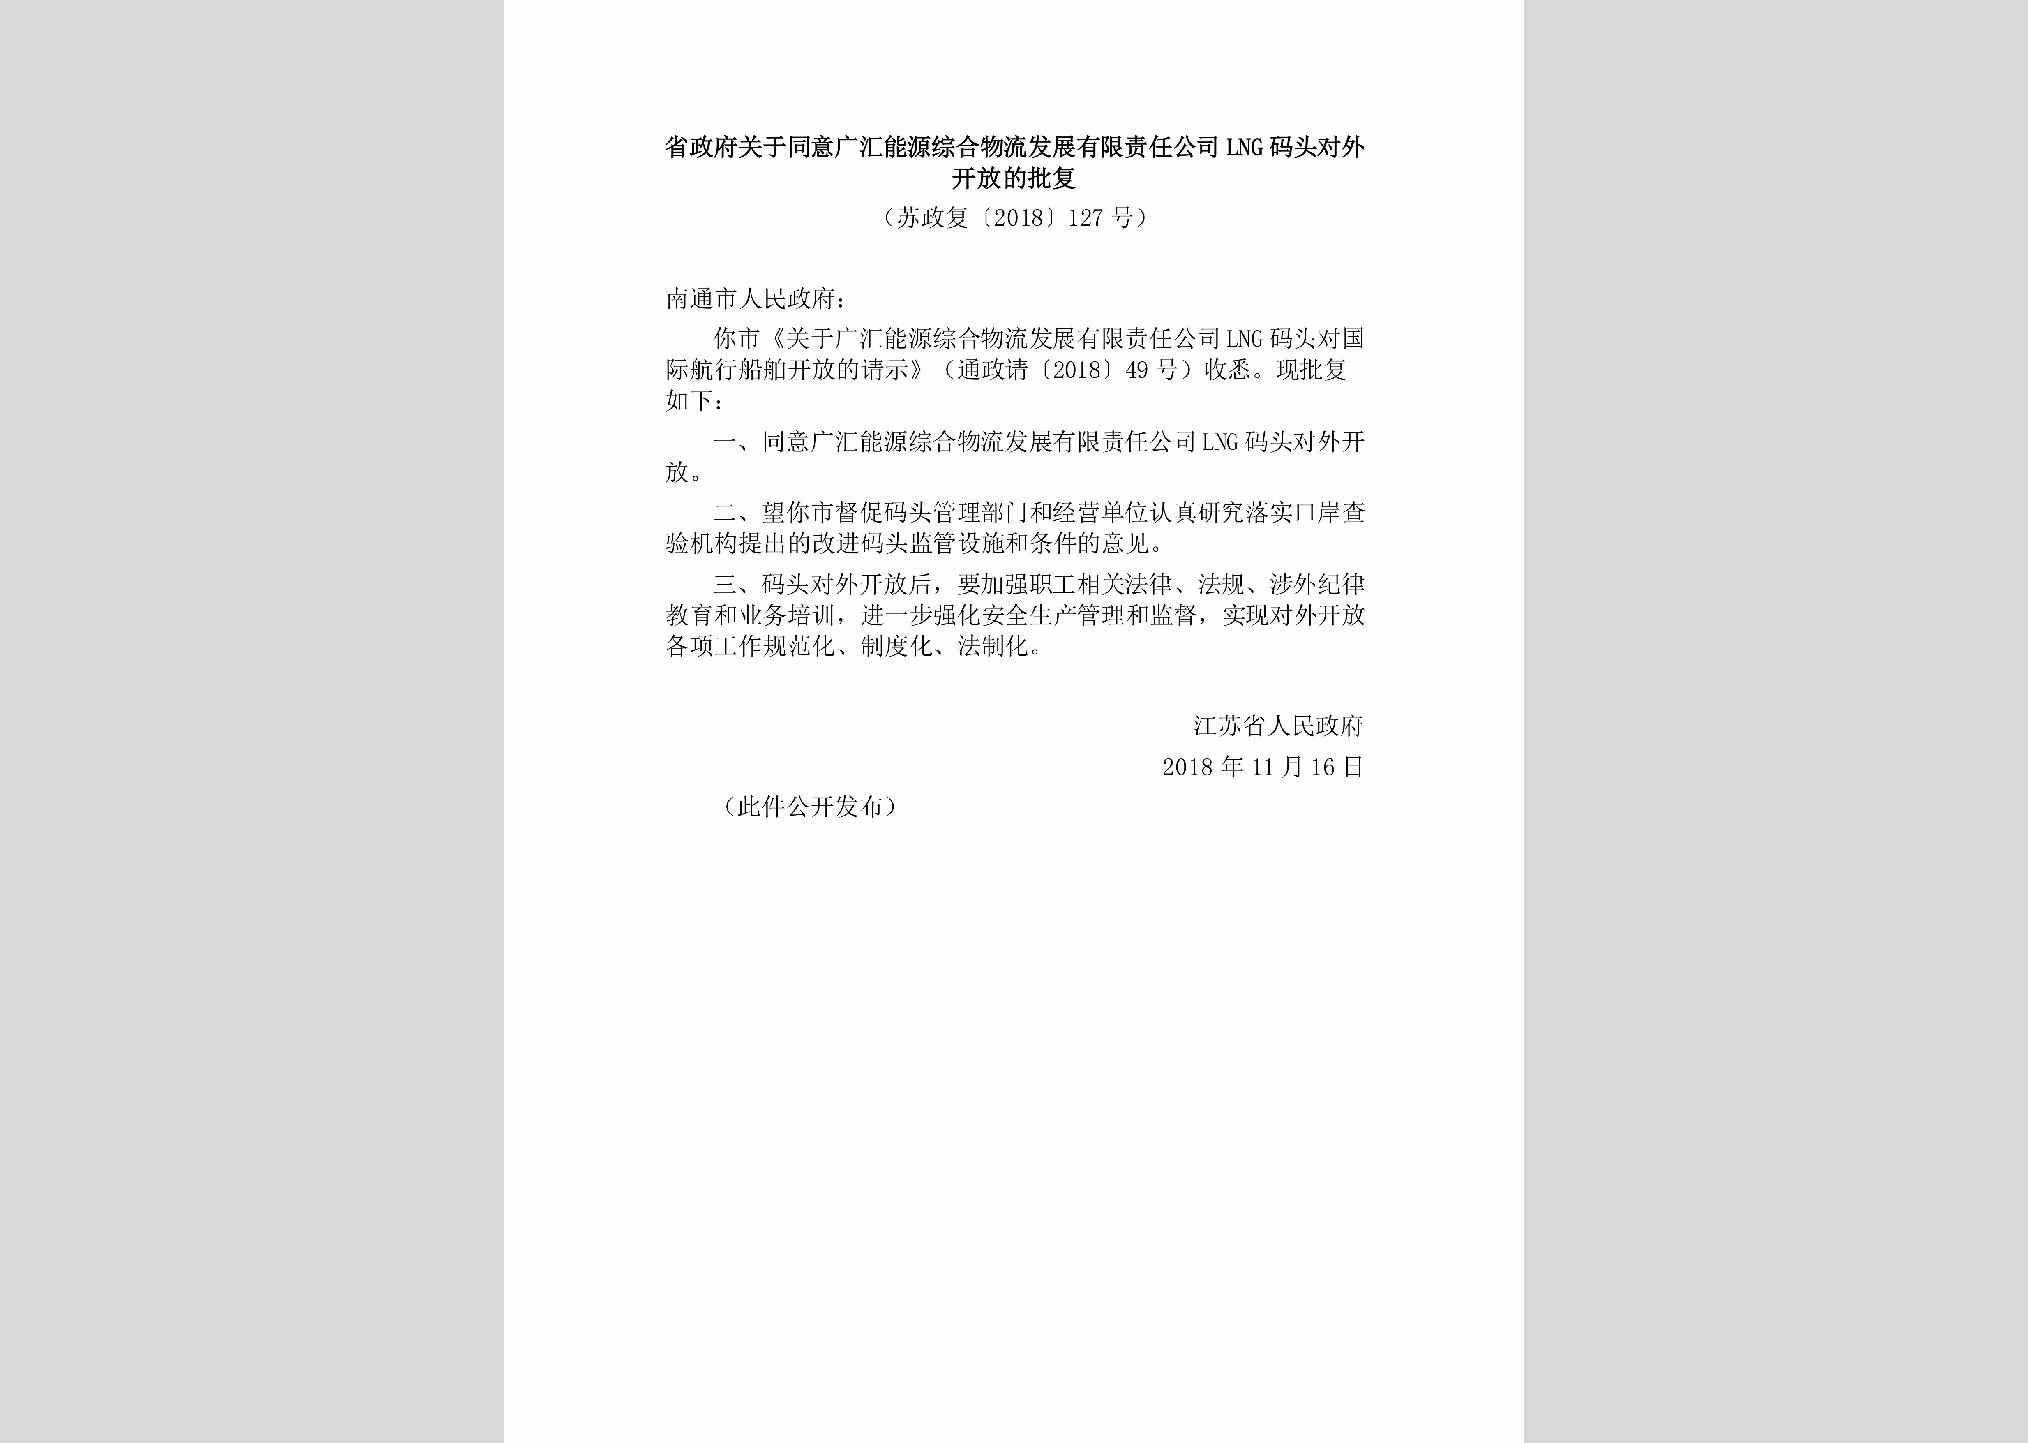 苏政复[2018]127号：省政府关于同意广汇能源综合物流发展有限责任公司LNG码头对外开放的批复